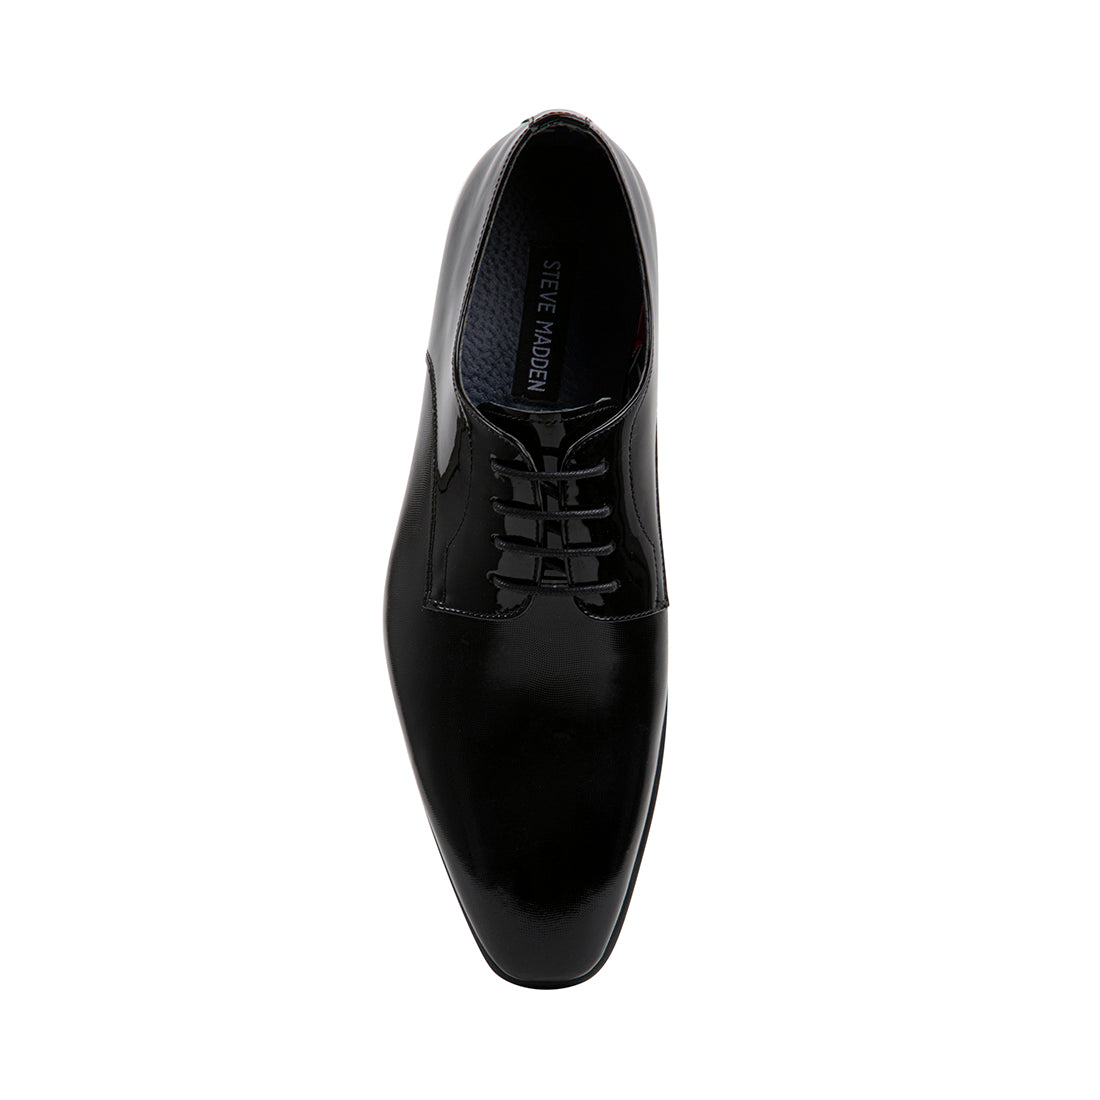 JOSE Black Patent Men's Dress Shoes | Men's Designer Dress Shoes ...